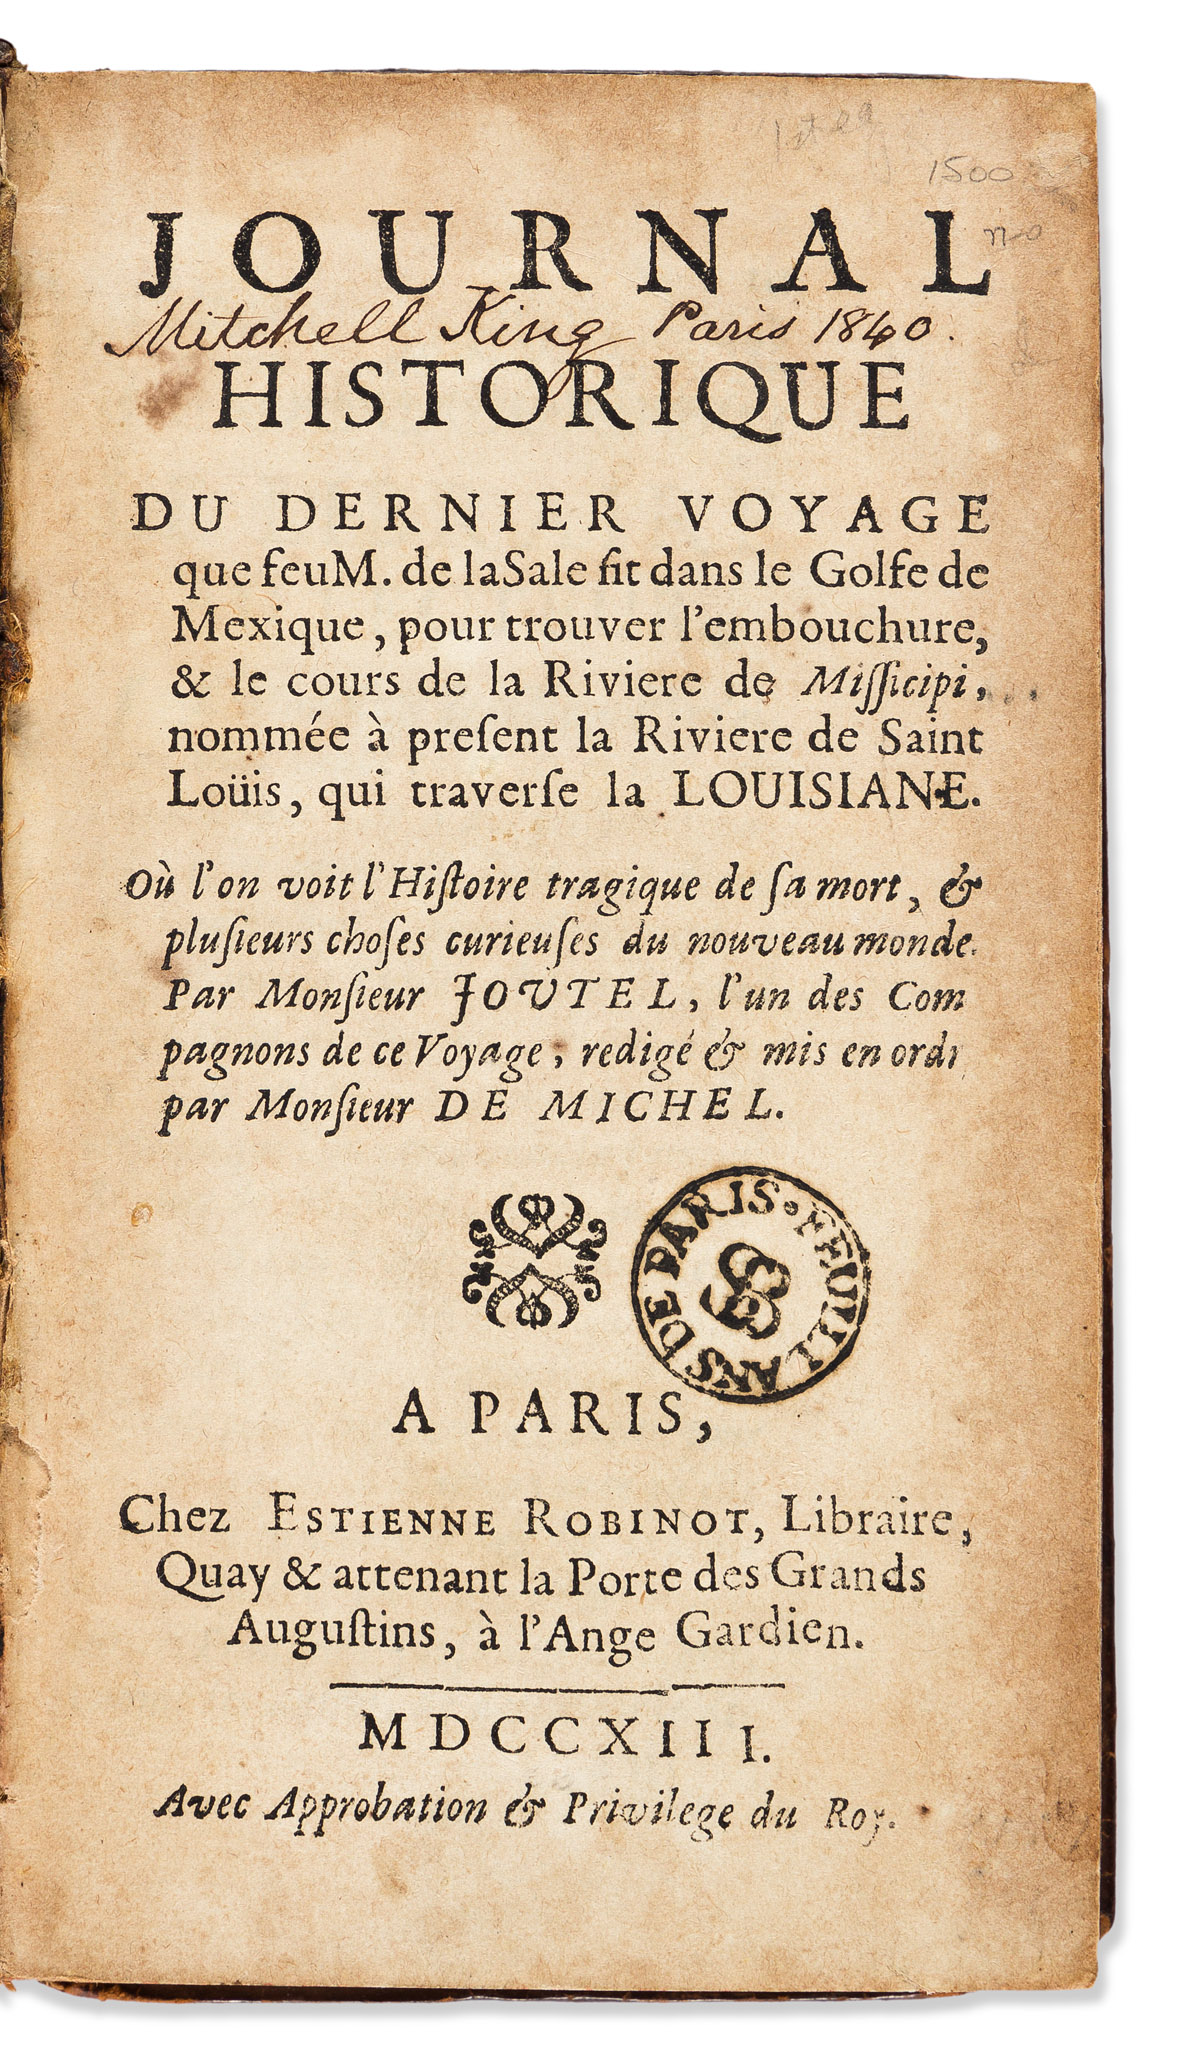 Journal Historique du Dernier Voyage que feu M. de la Sale